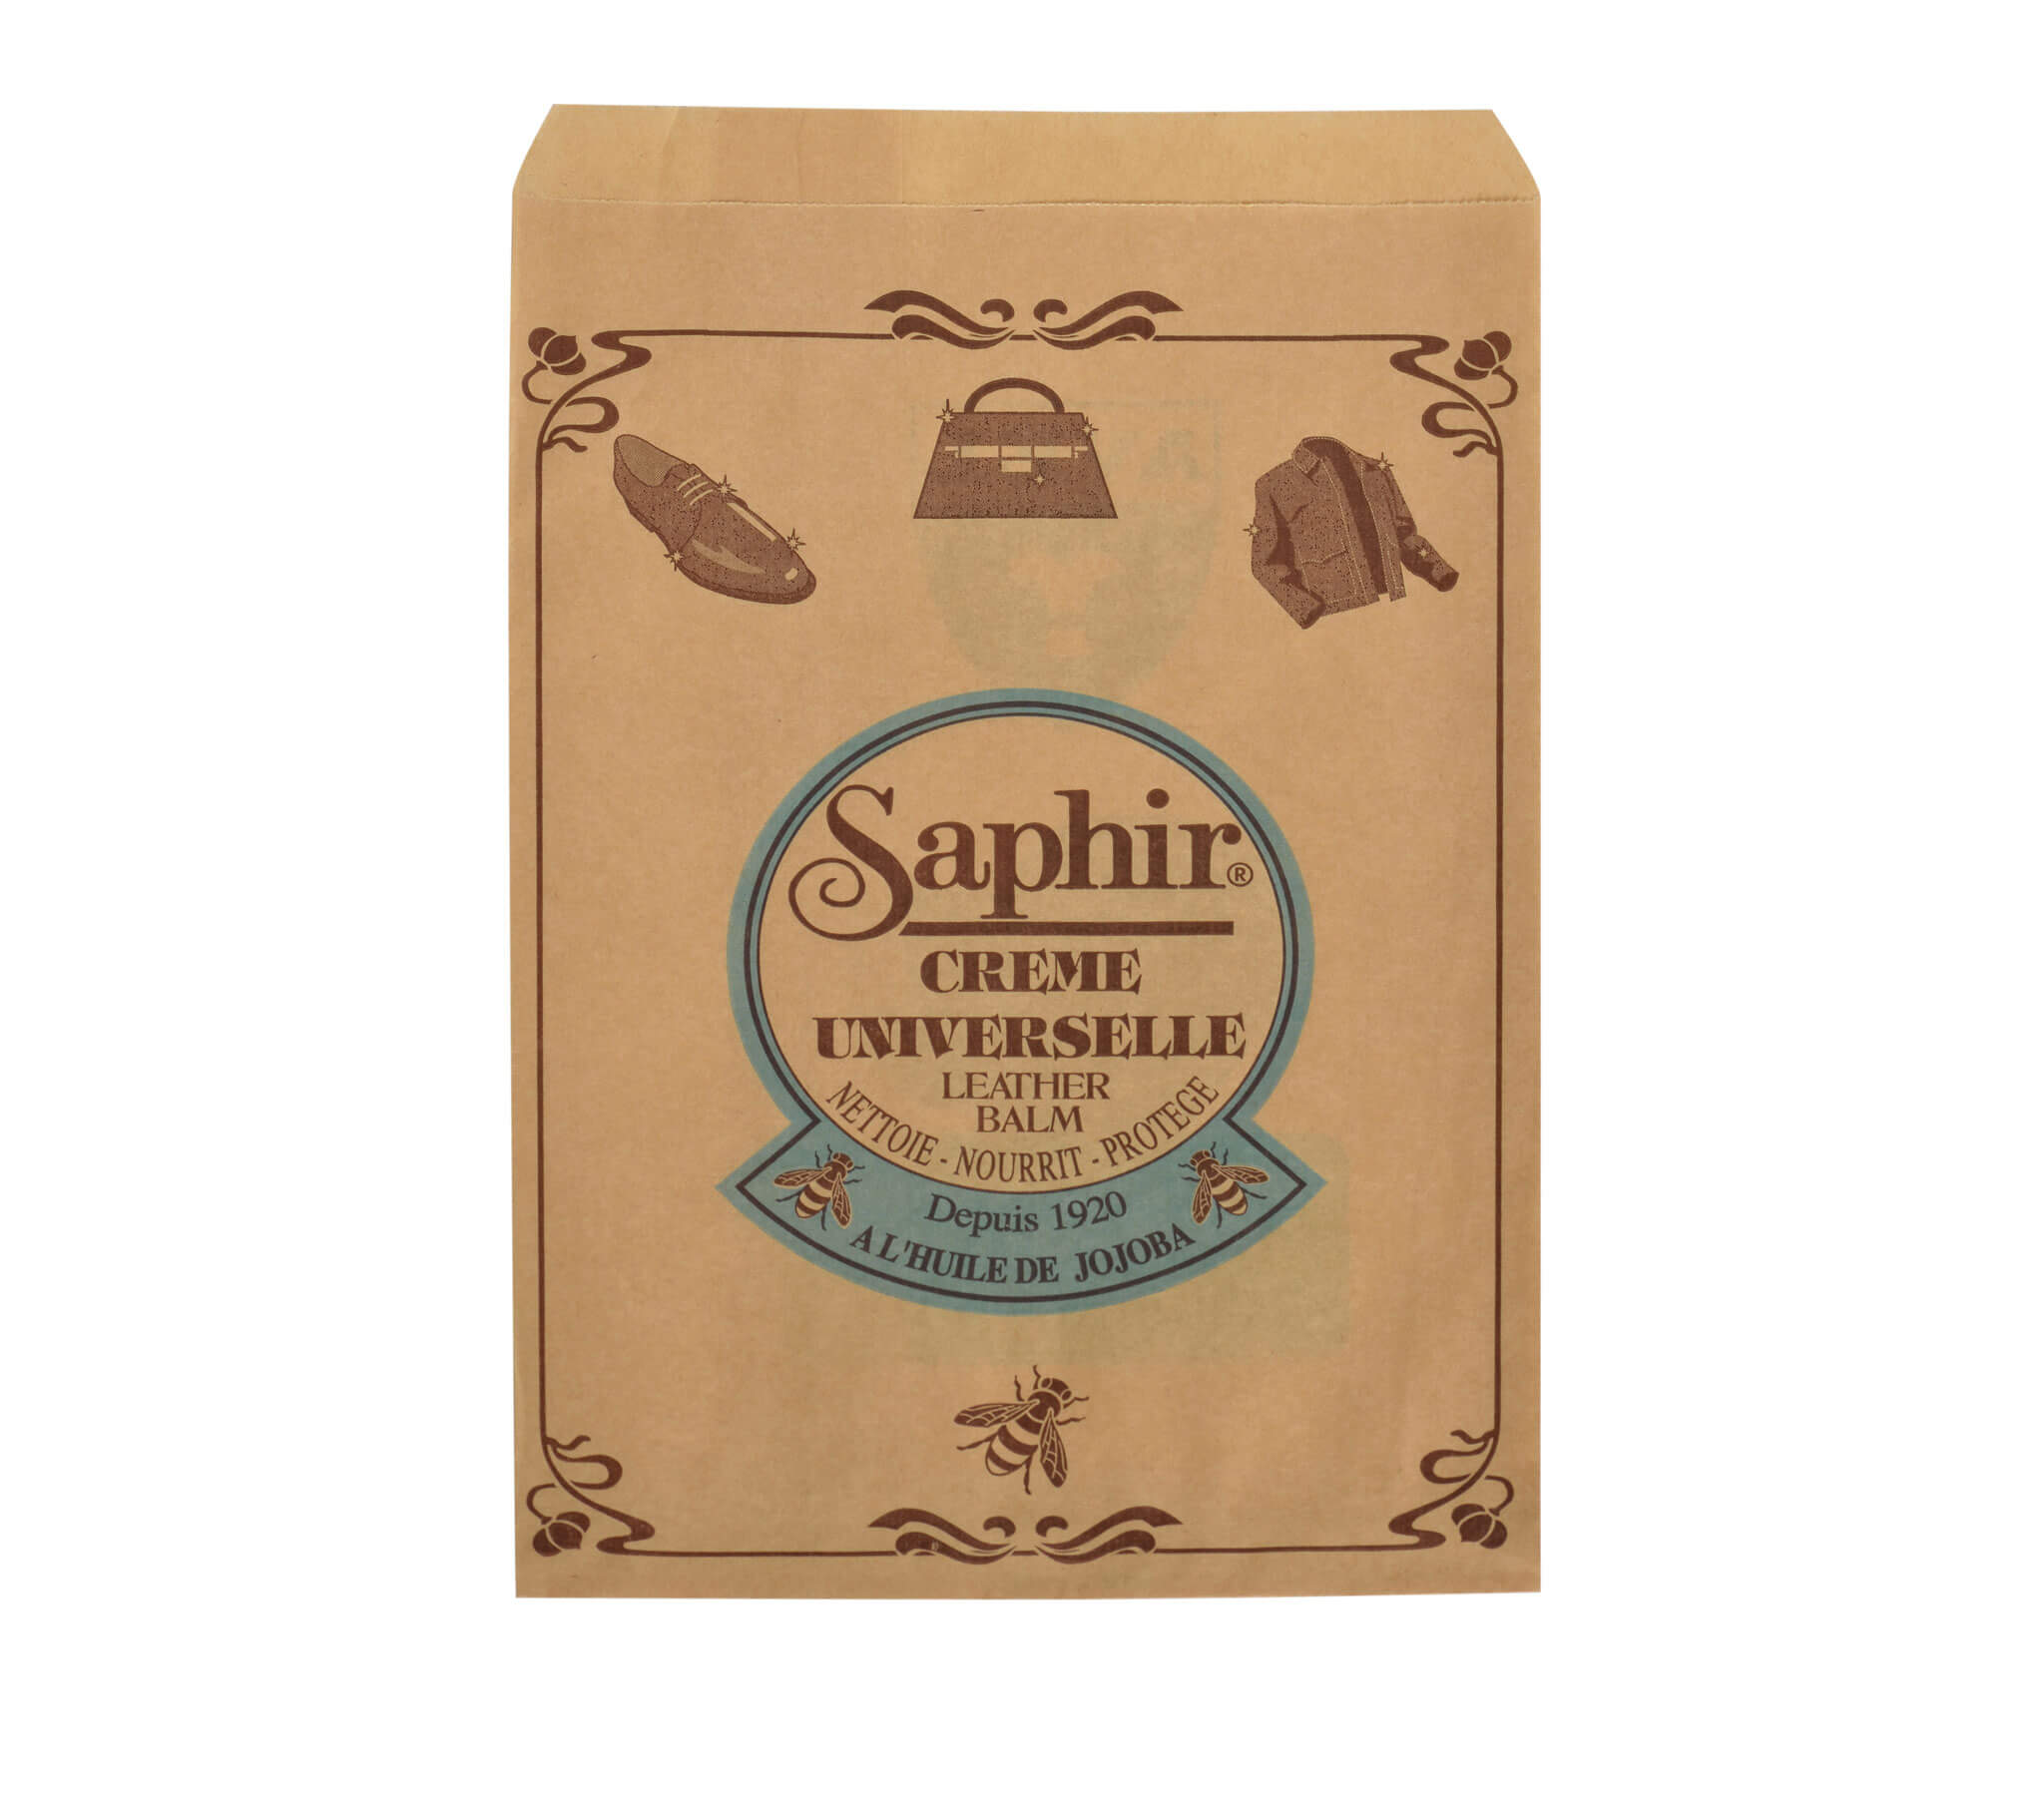 Crème universelle Saphir